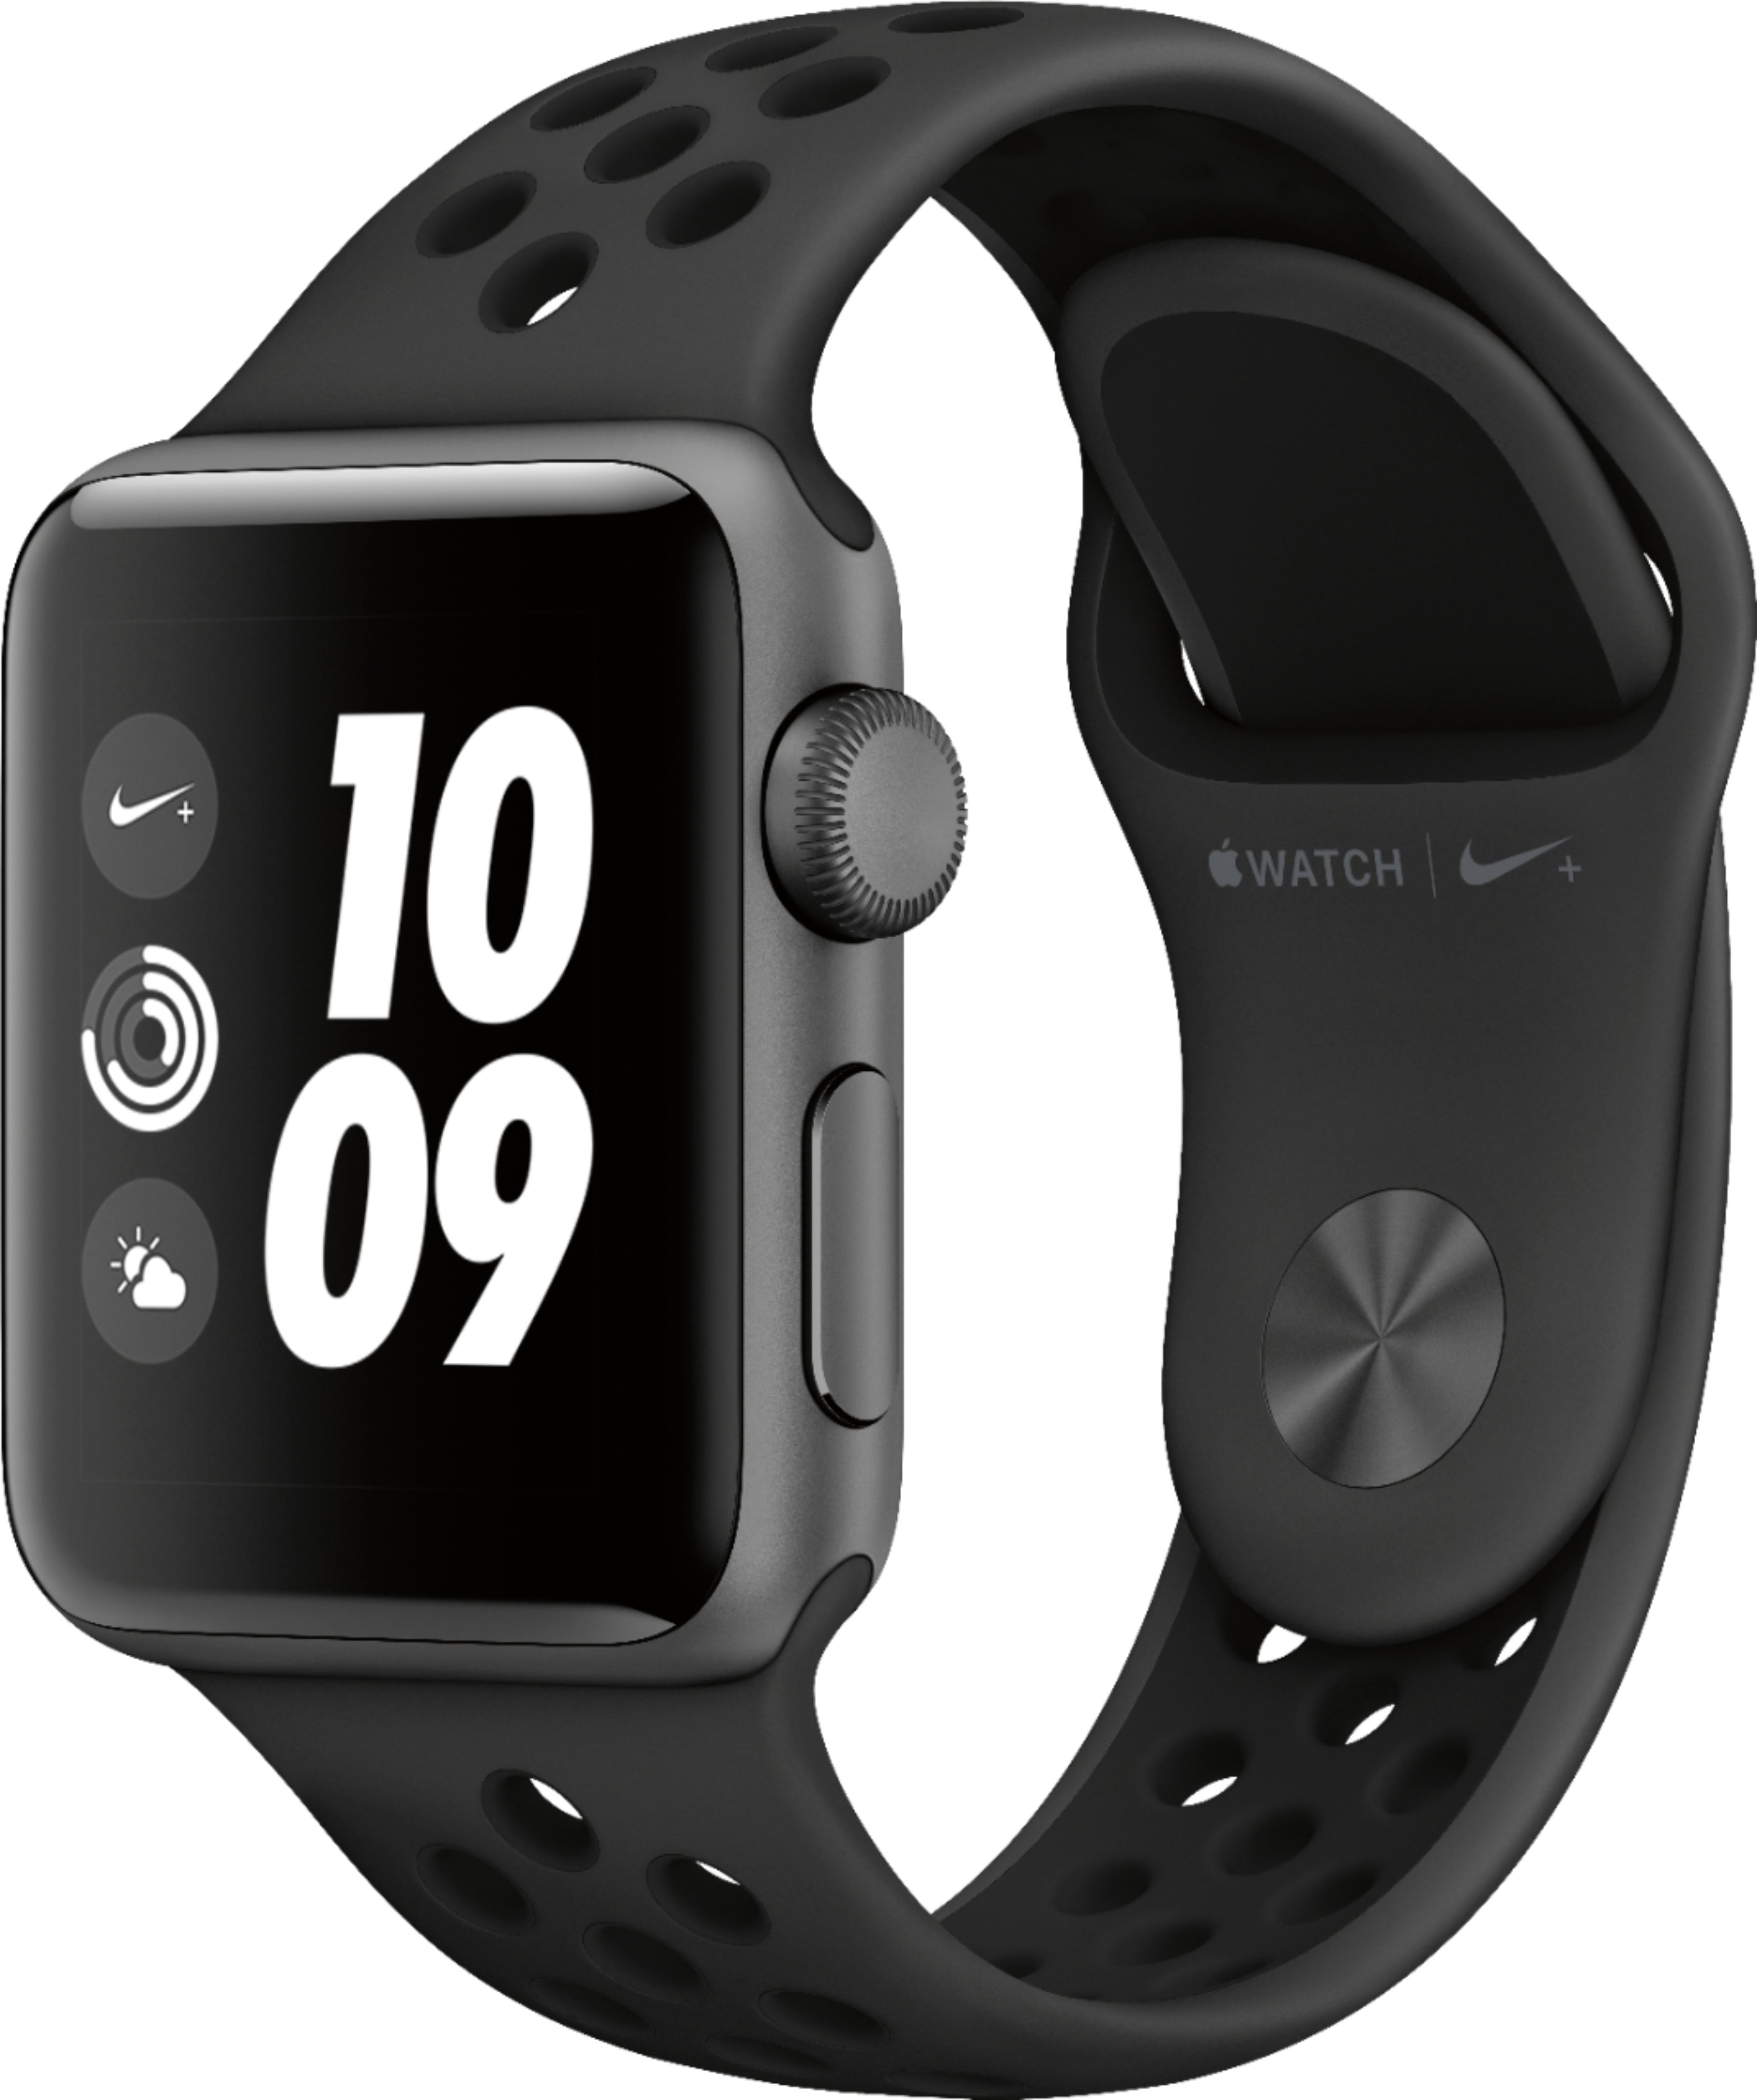 Apple Watch Nike+ Series 3 (GPS) 38mm Space Gray - Best Buy